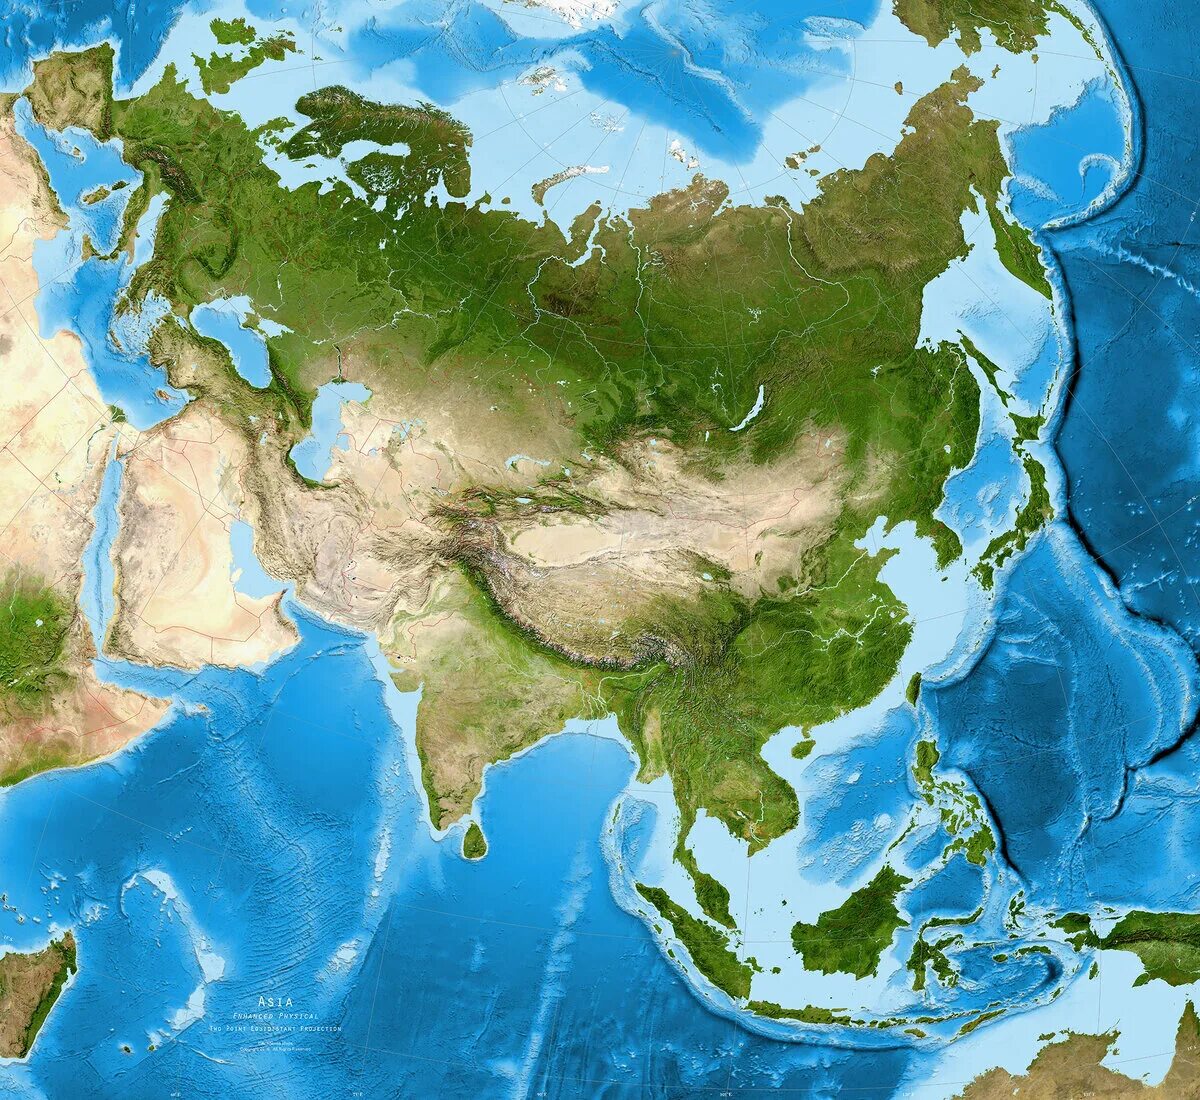 Середина евразии. Материк Евразия. Спутниковый снимок Евразии. Материк Азия материк Евразия. Континент Евразия.